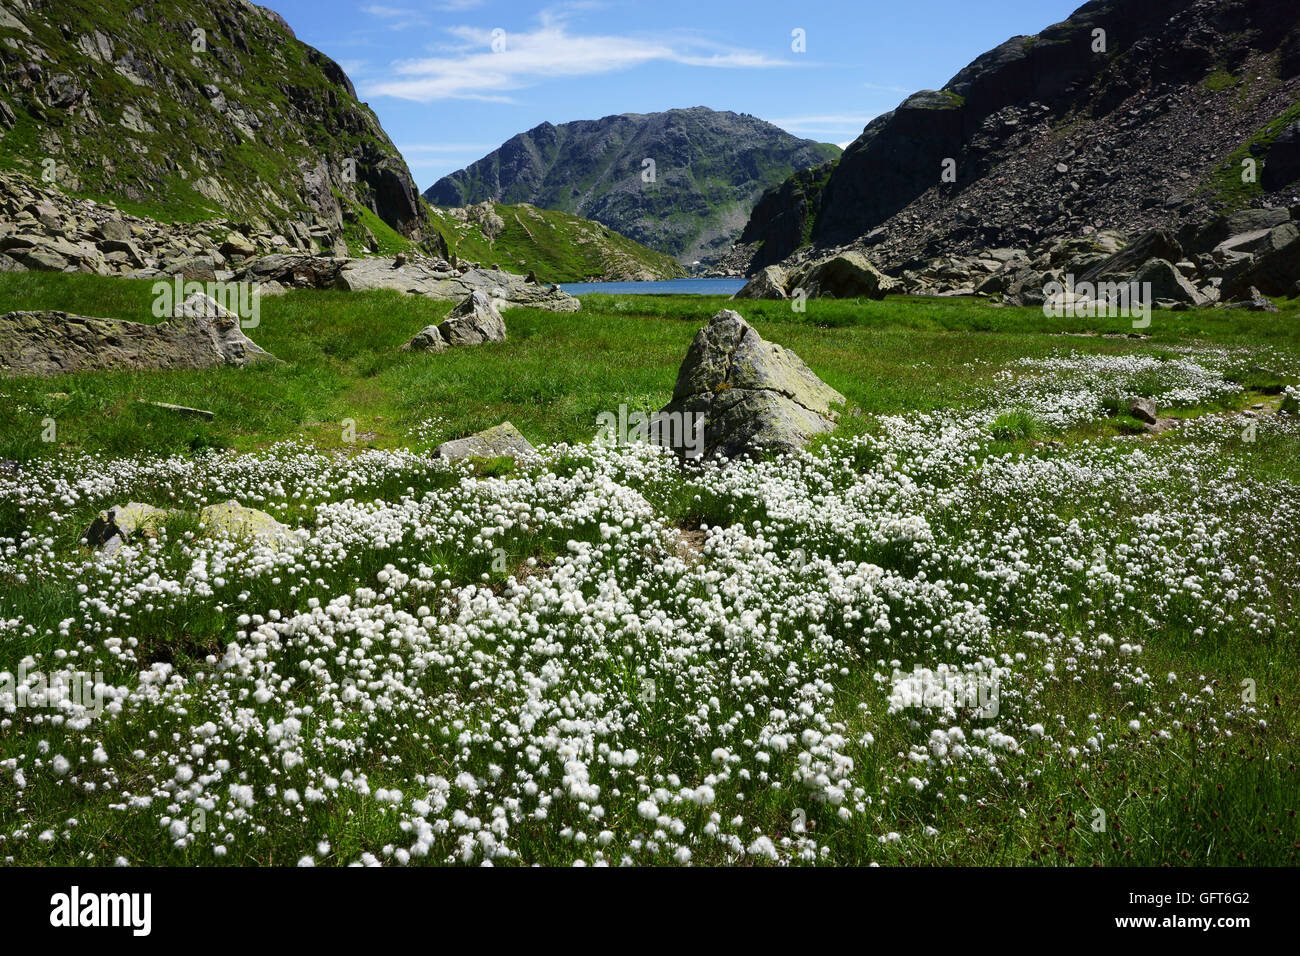 Baumwolle Blumen und Toma See, Leigh da Tuma, Quelle oder Ursprung des Rhein Flusses, Graubünden, Schweiz Stockfoto